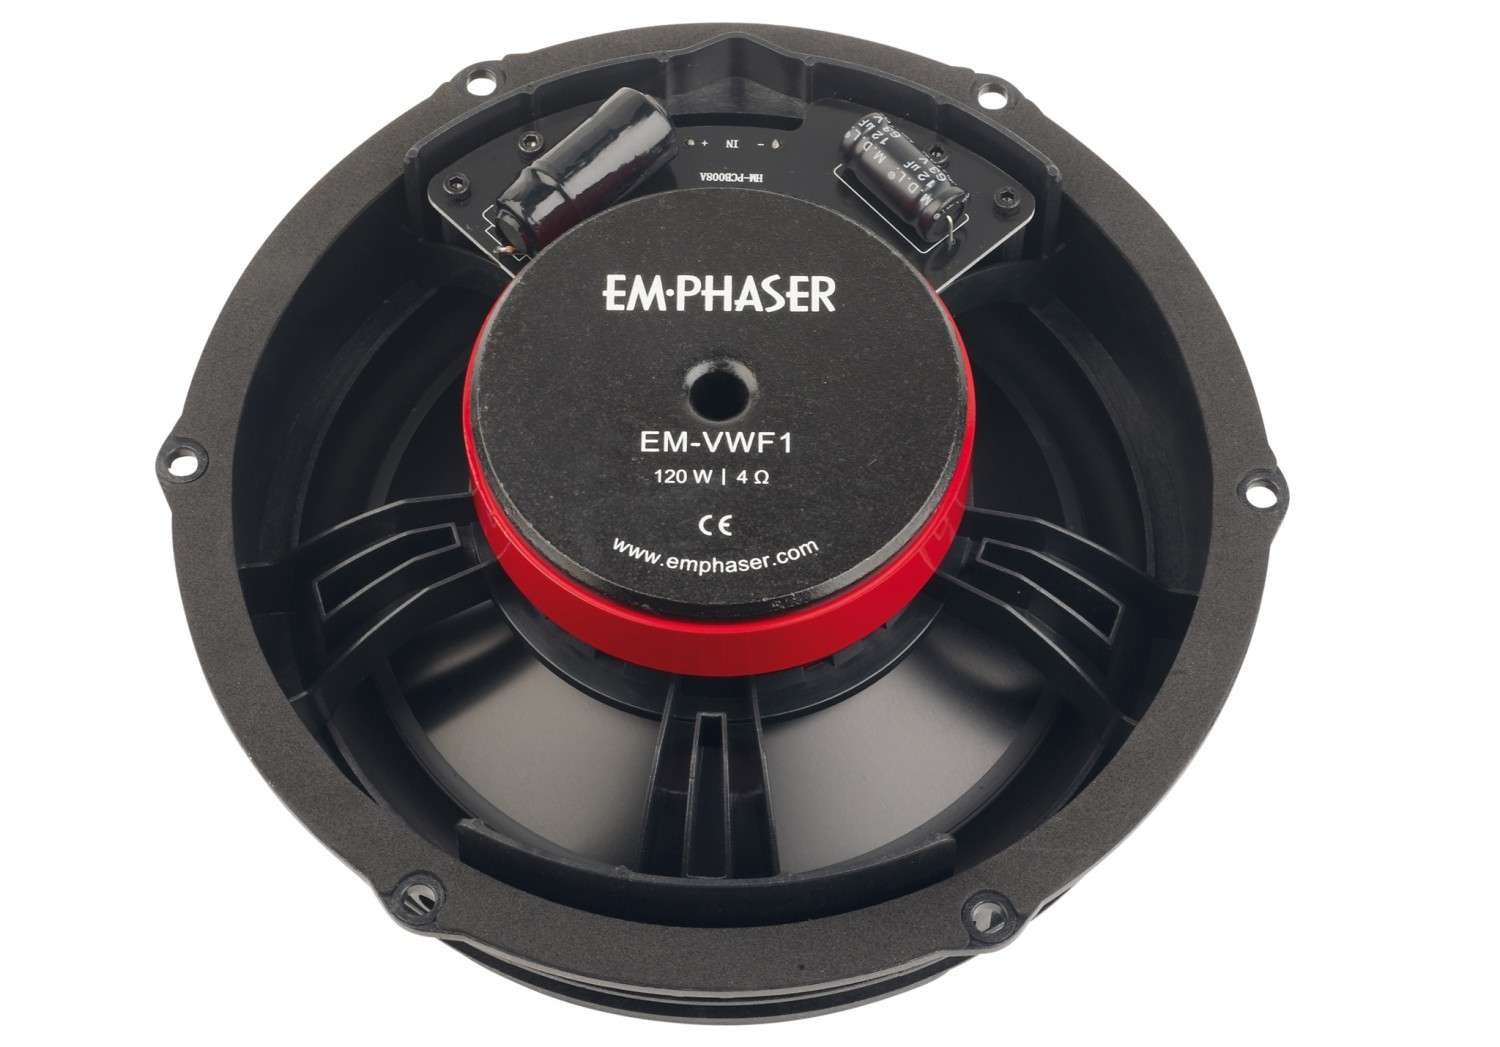 In-Car Lautsprecher fahrzeugspezifisch Emphaser EM-FTF1, Emphaser EM-VWF1 im Test , Bild 2